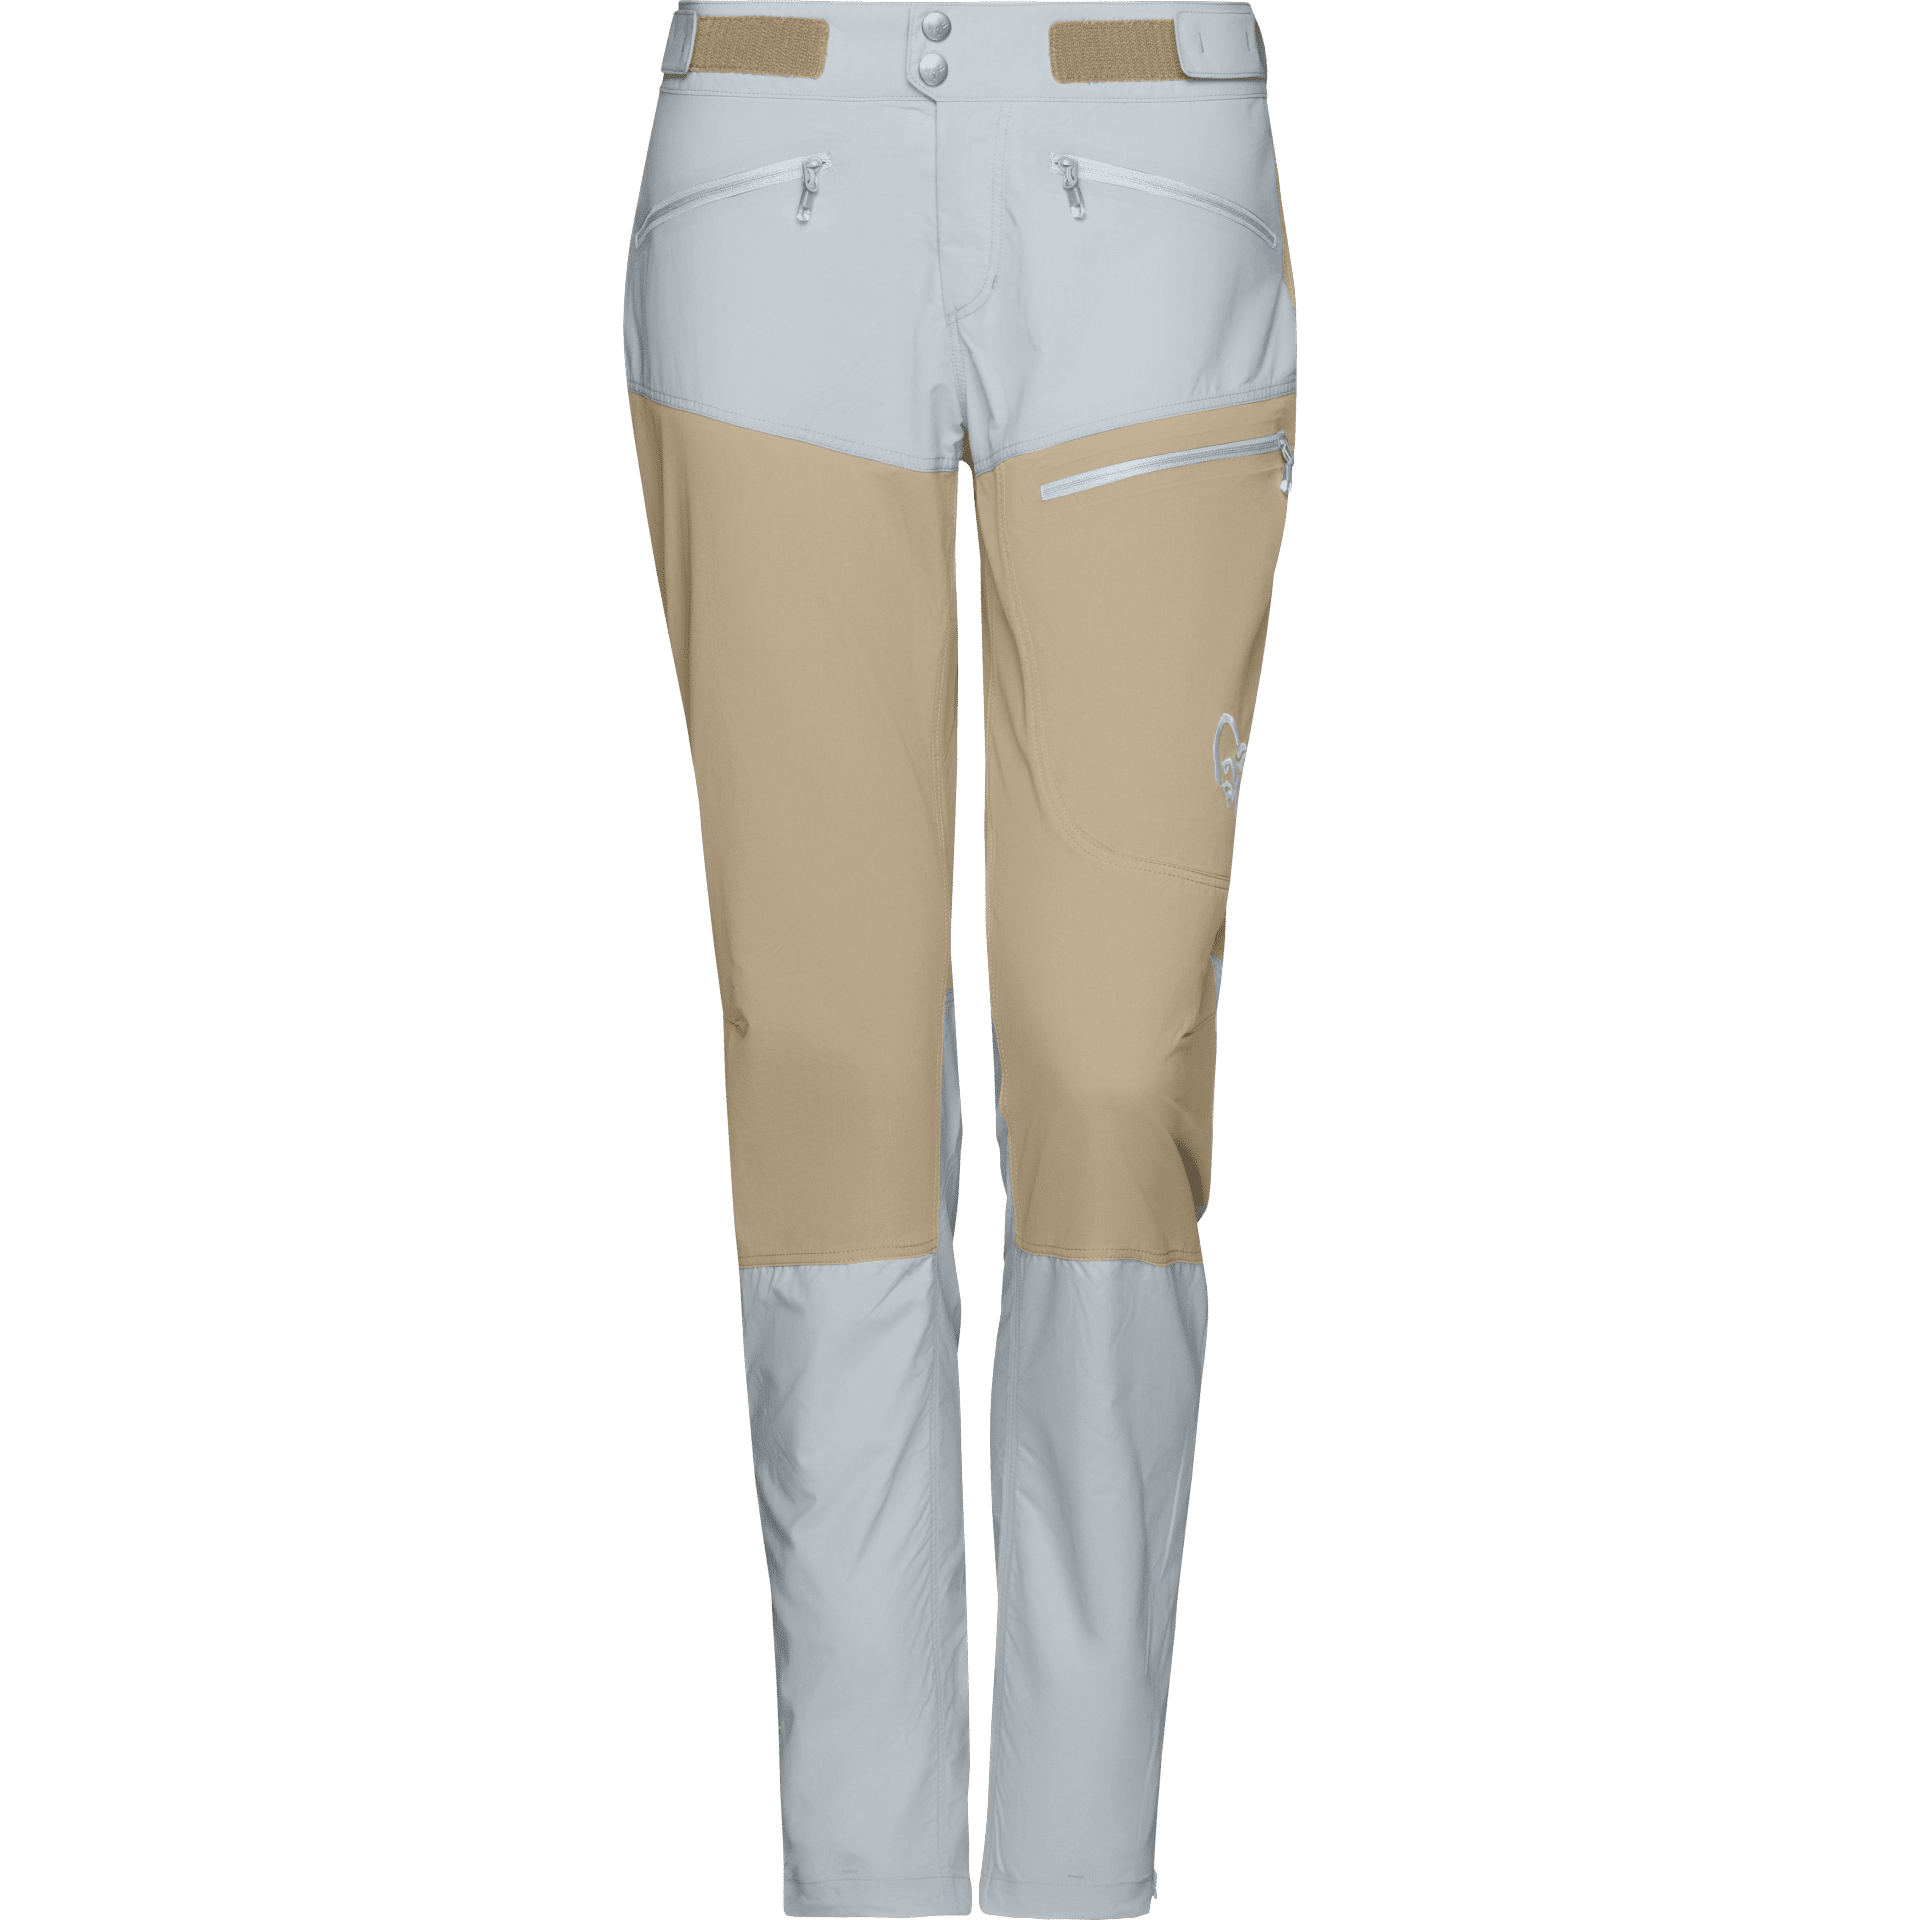 Nørrona Bitihorn Lightweight Pants - Pantalón de trekking - Mujer